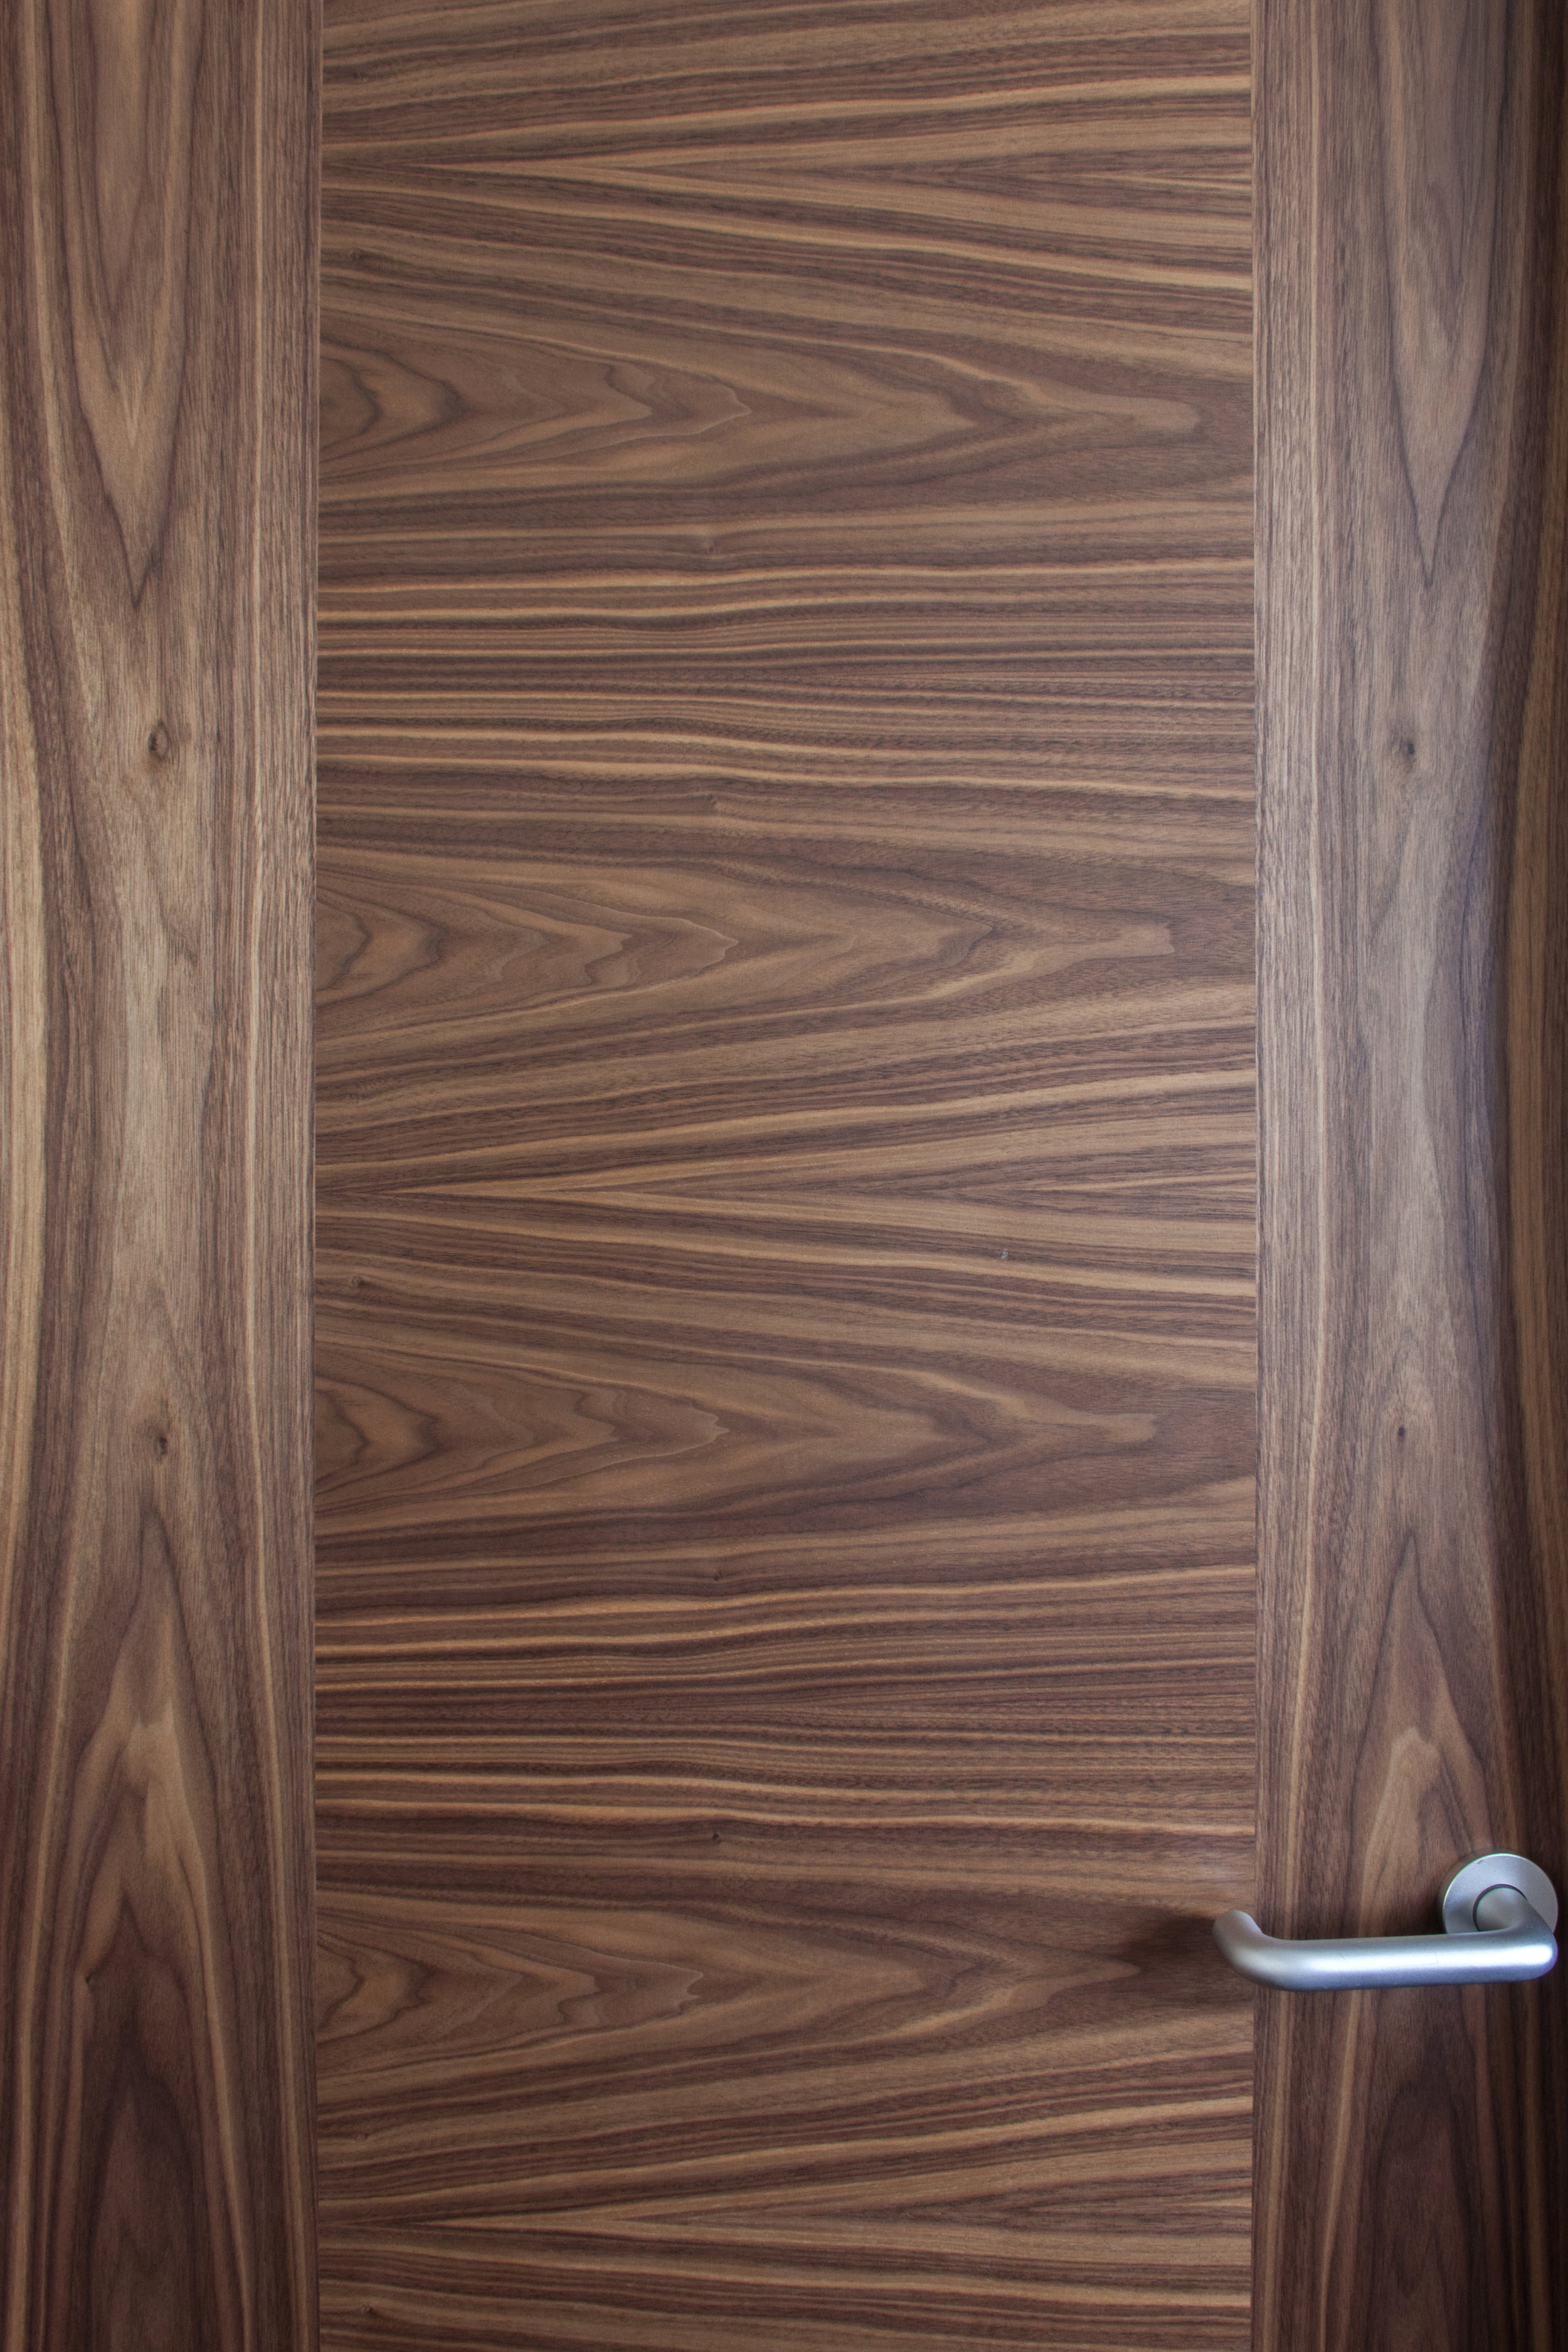 Walnut door set with horizontal veneer